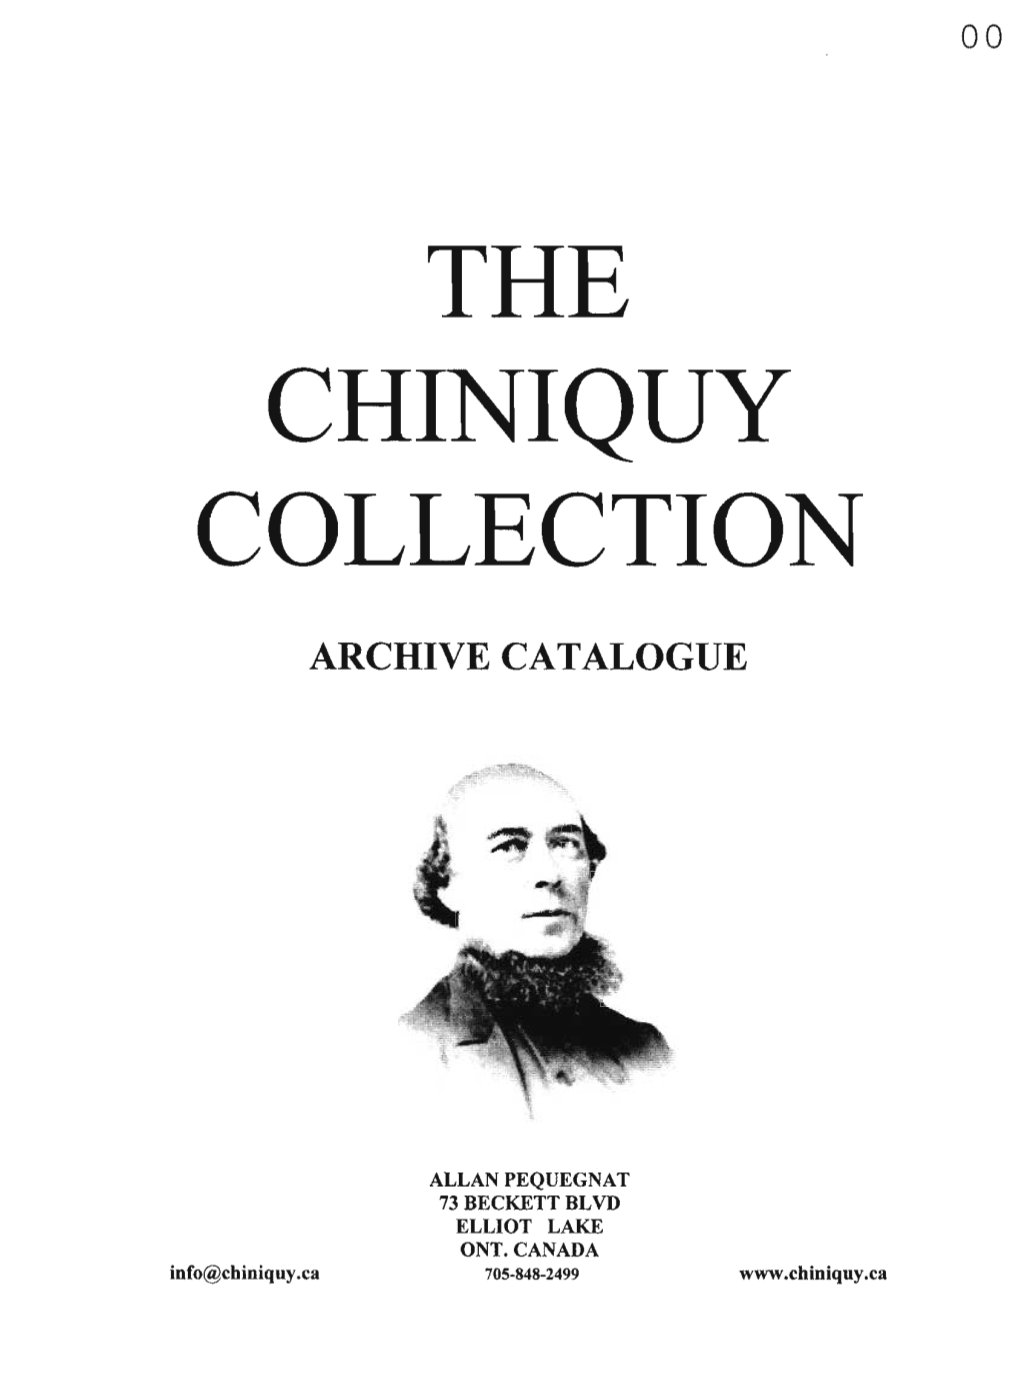 Archive Catalogue